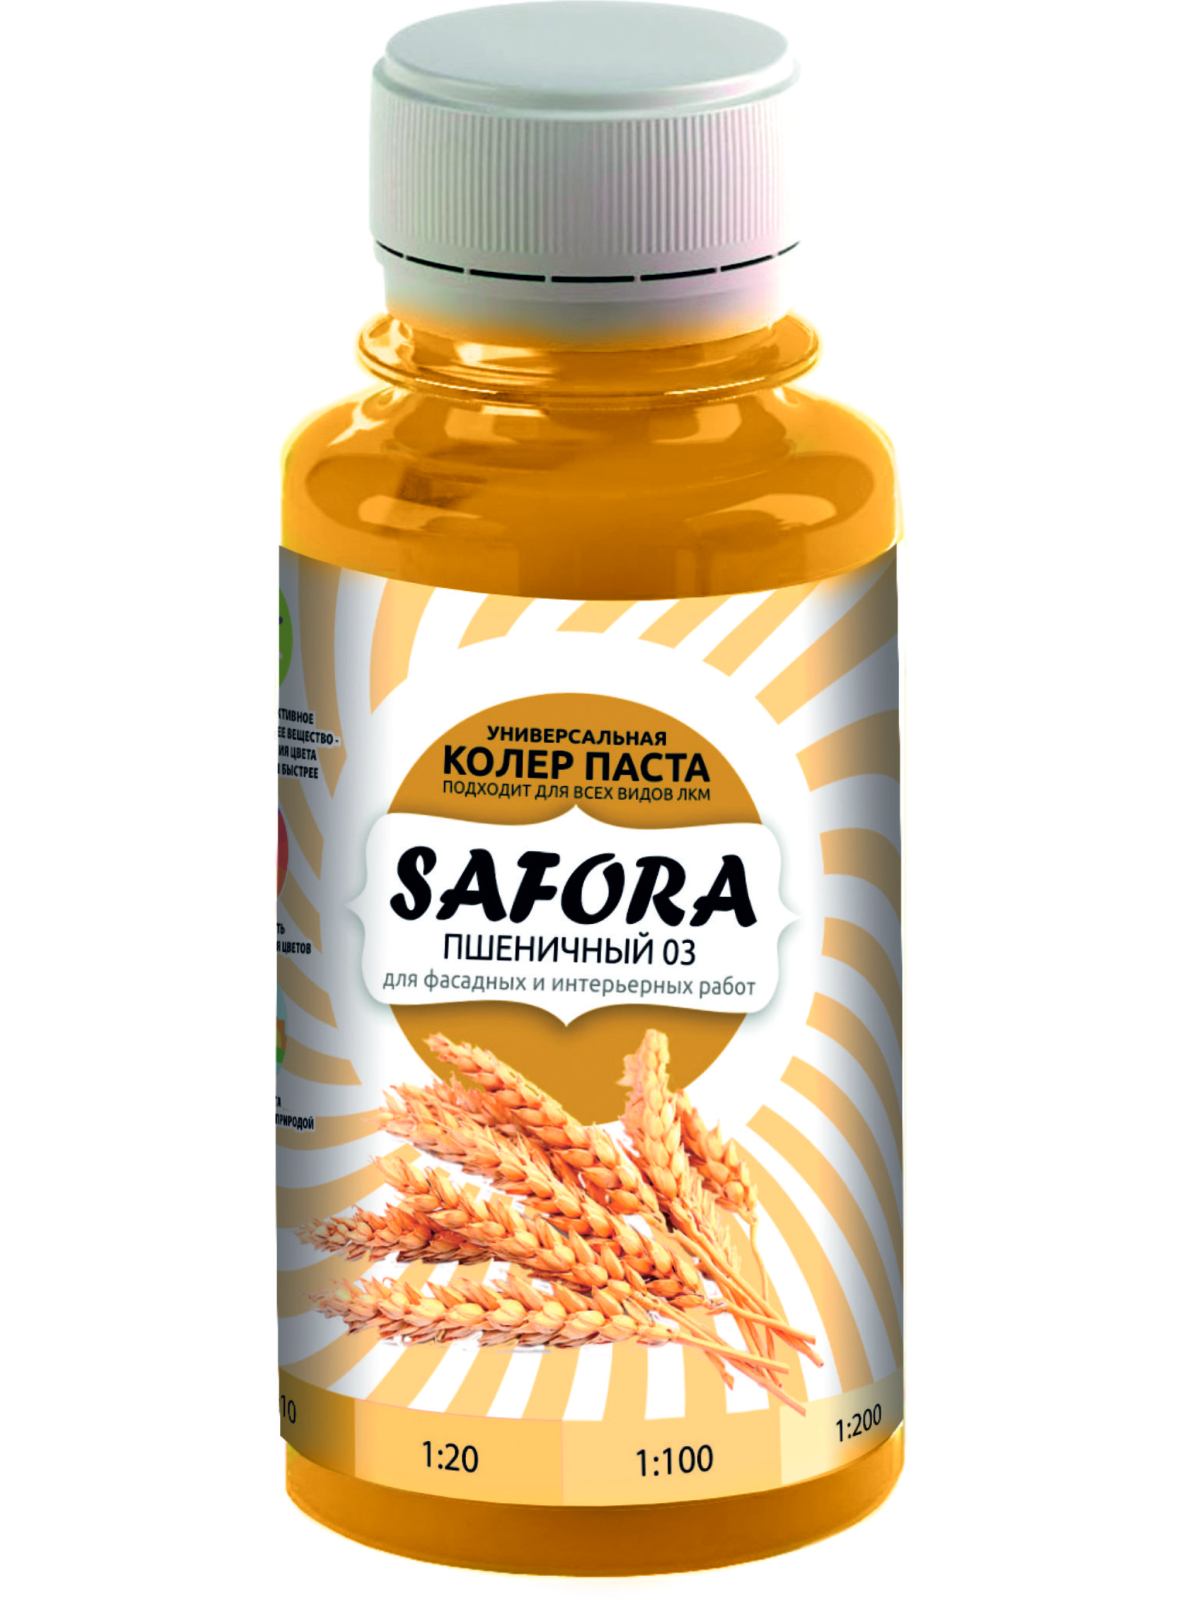 Колеровочная паста SAFORA 03 пшеничный, 100 мл колеровочная паста safora 03 пшеничный 100 мл